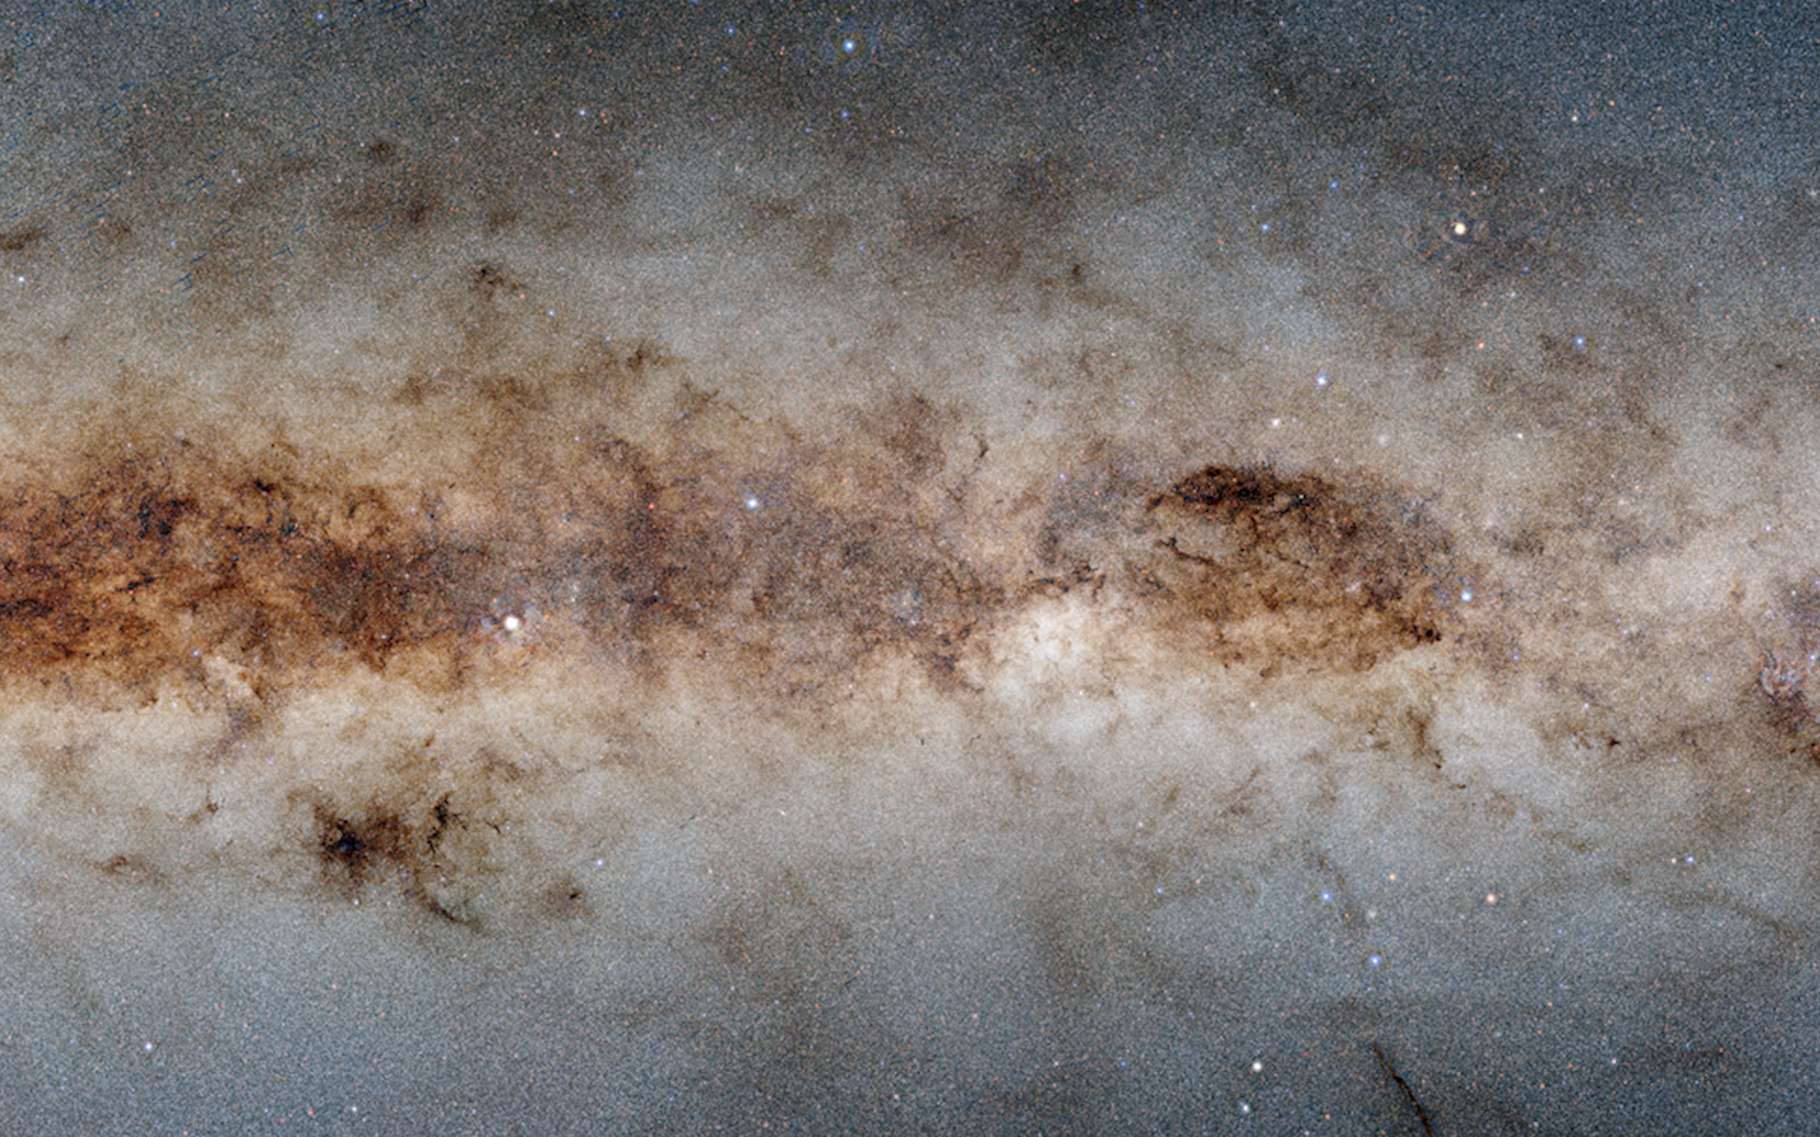 3,3 milliards d'objets célestes sur cette image de la Voie lactée !